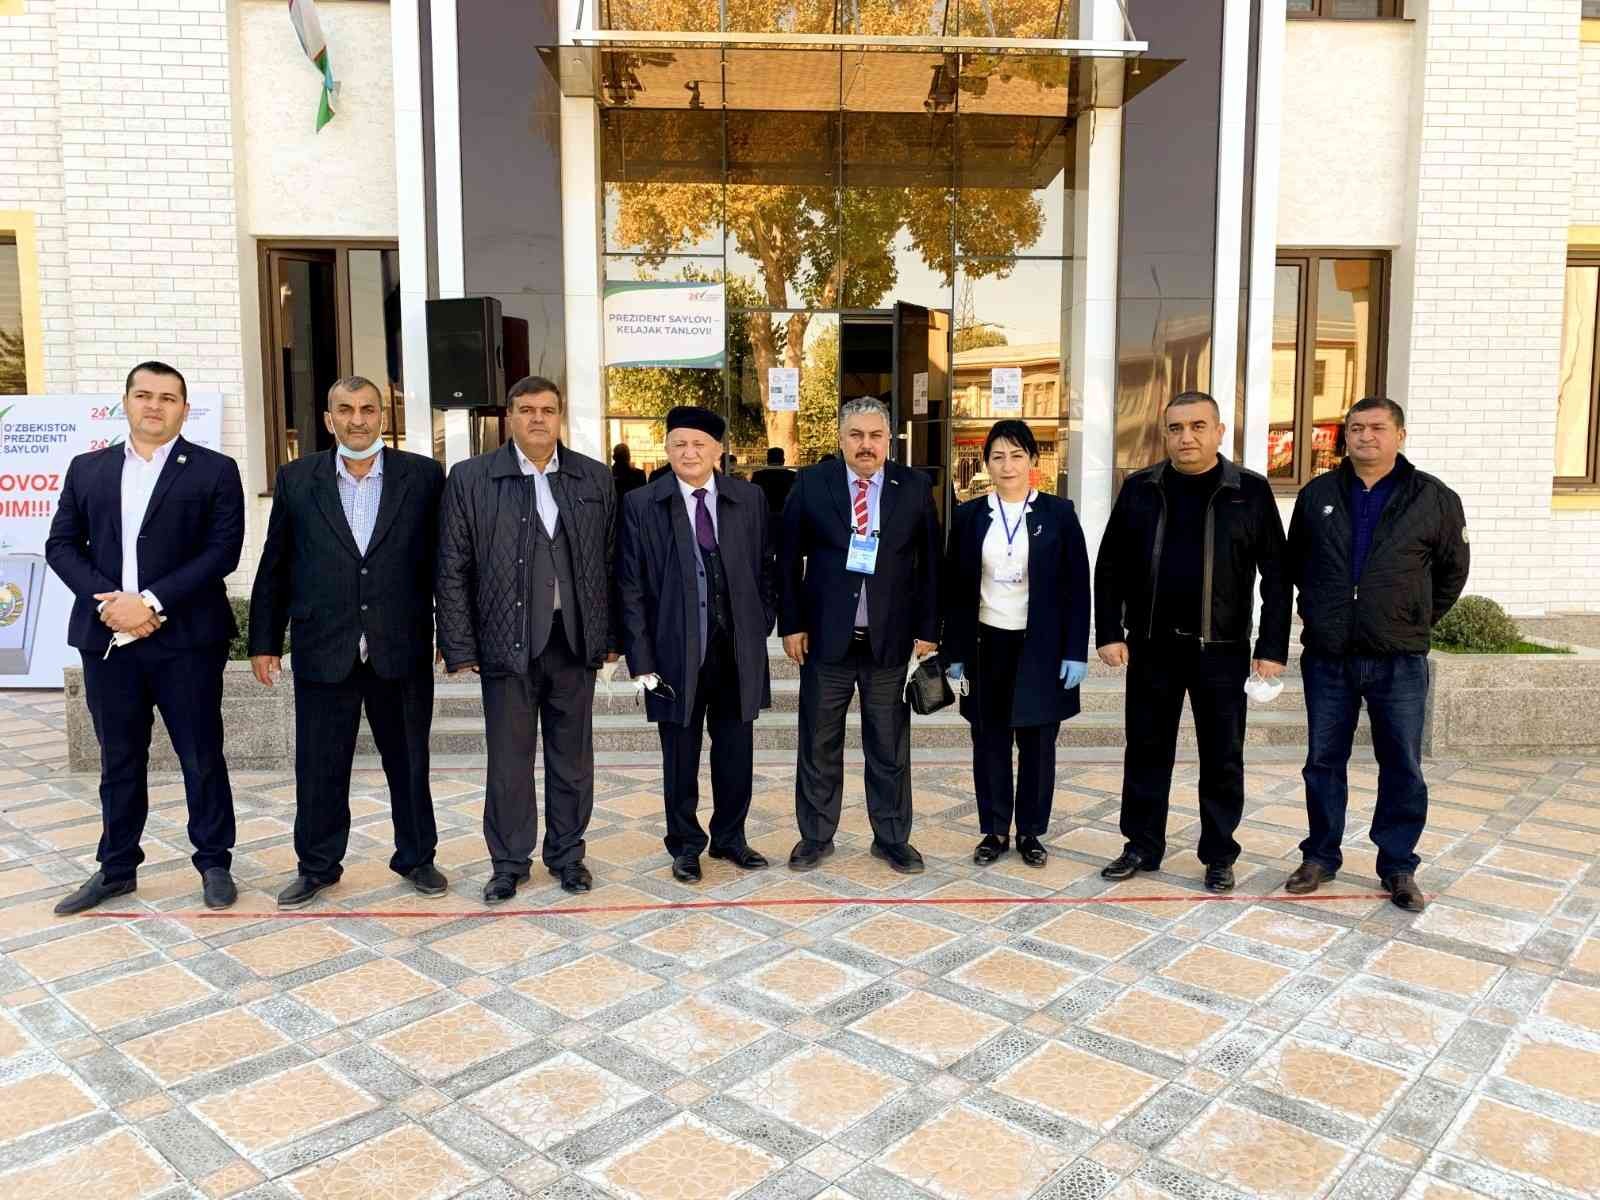 Özbekistan Adana Fahri Konsolosu Medeni, Özbekistan seçimlerini değerlendirdi #adana